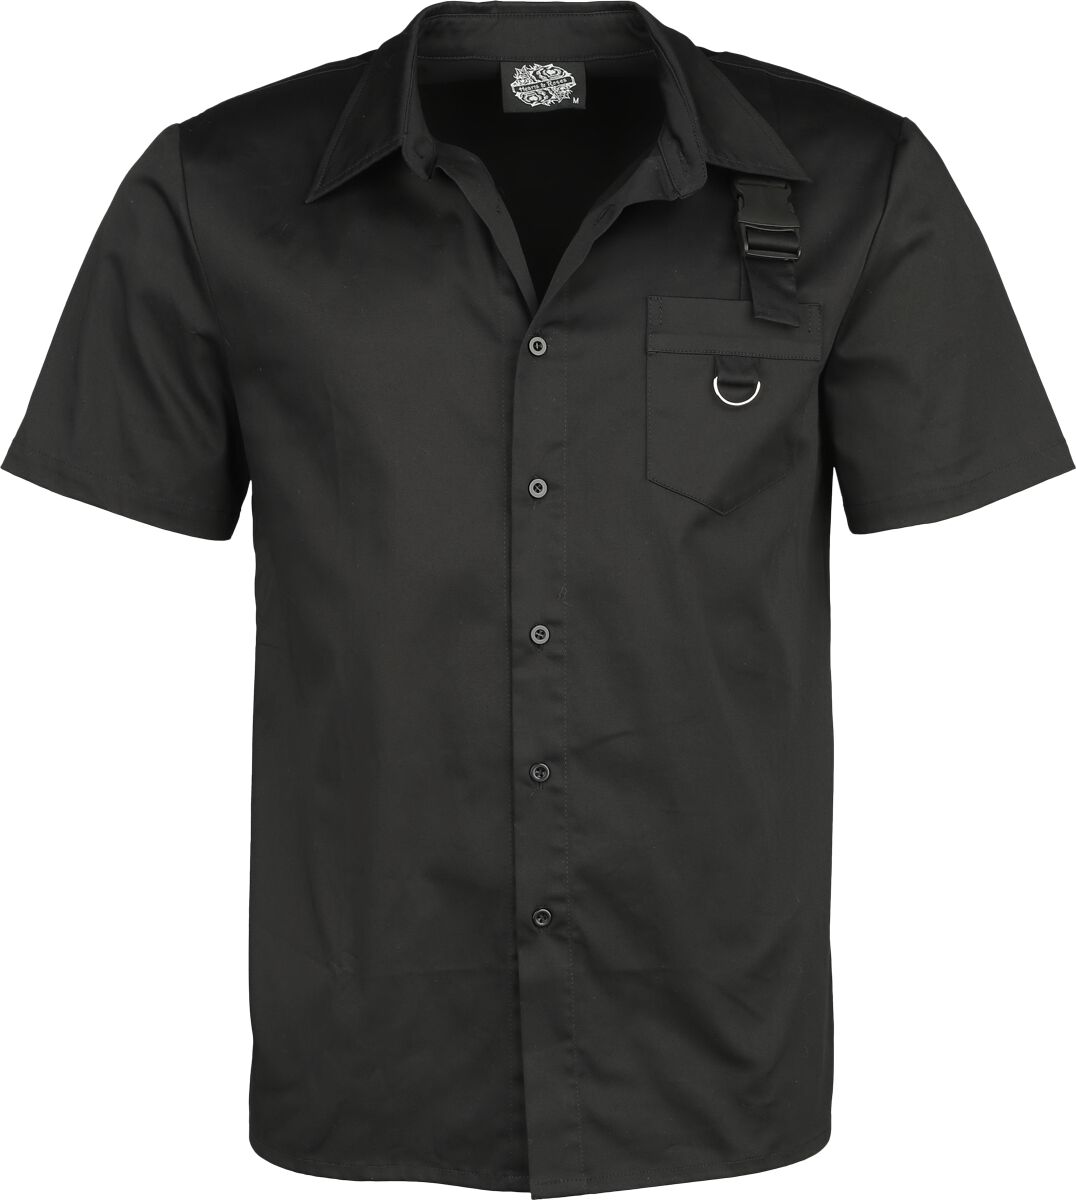 H&R London - Gothic Kurzarmhemd - Black Shirt - S bis L - für Männer - Größe S - schwarz von H&R London